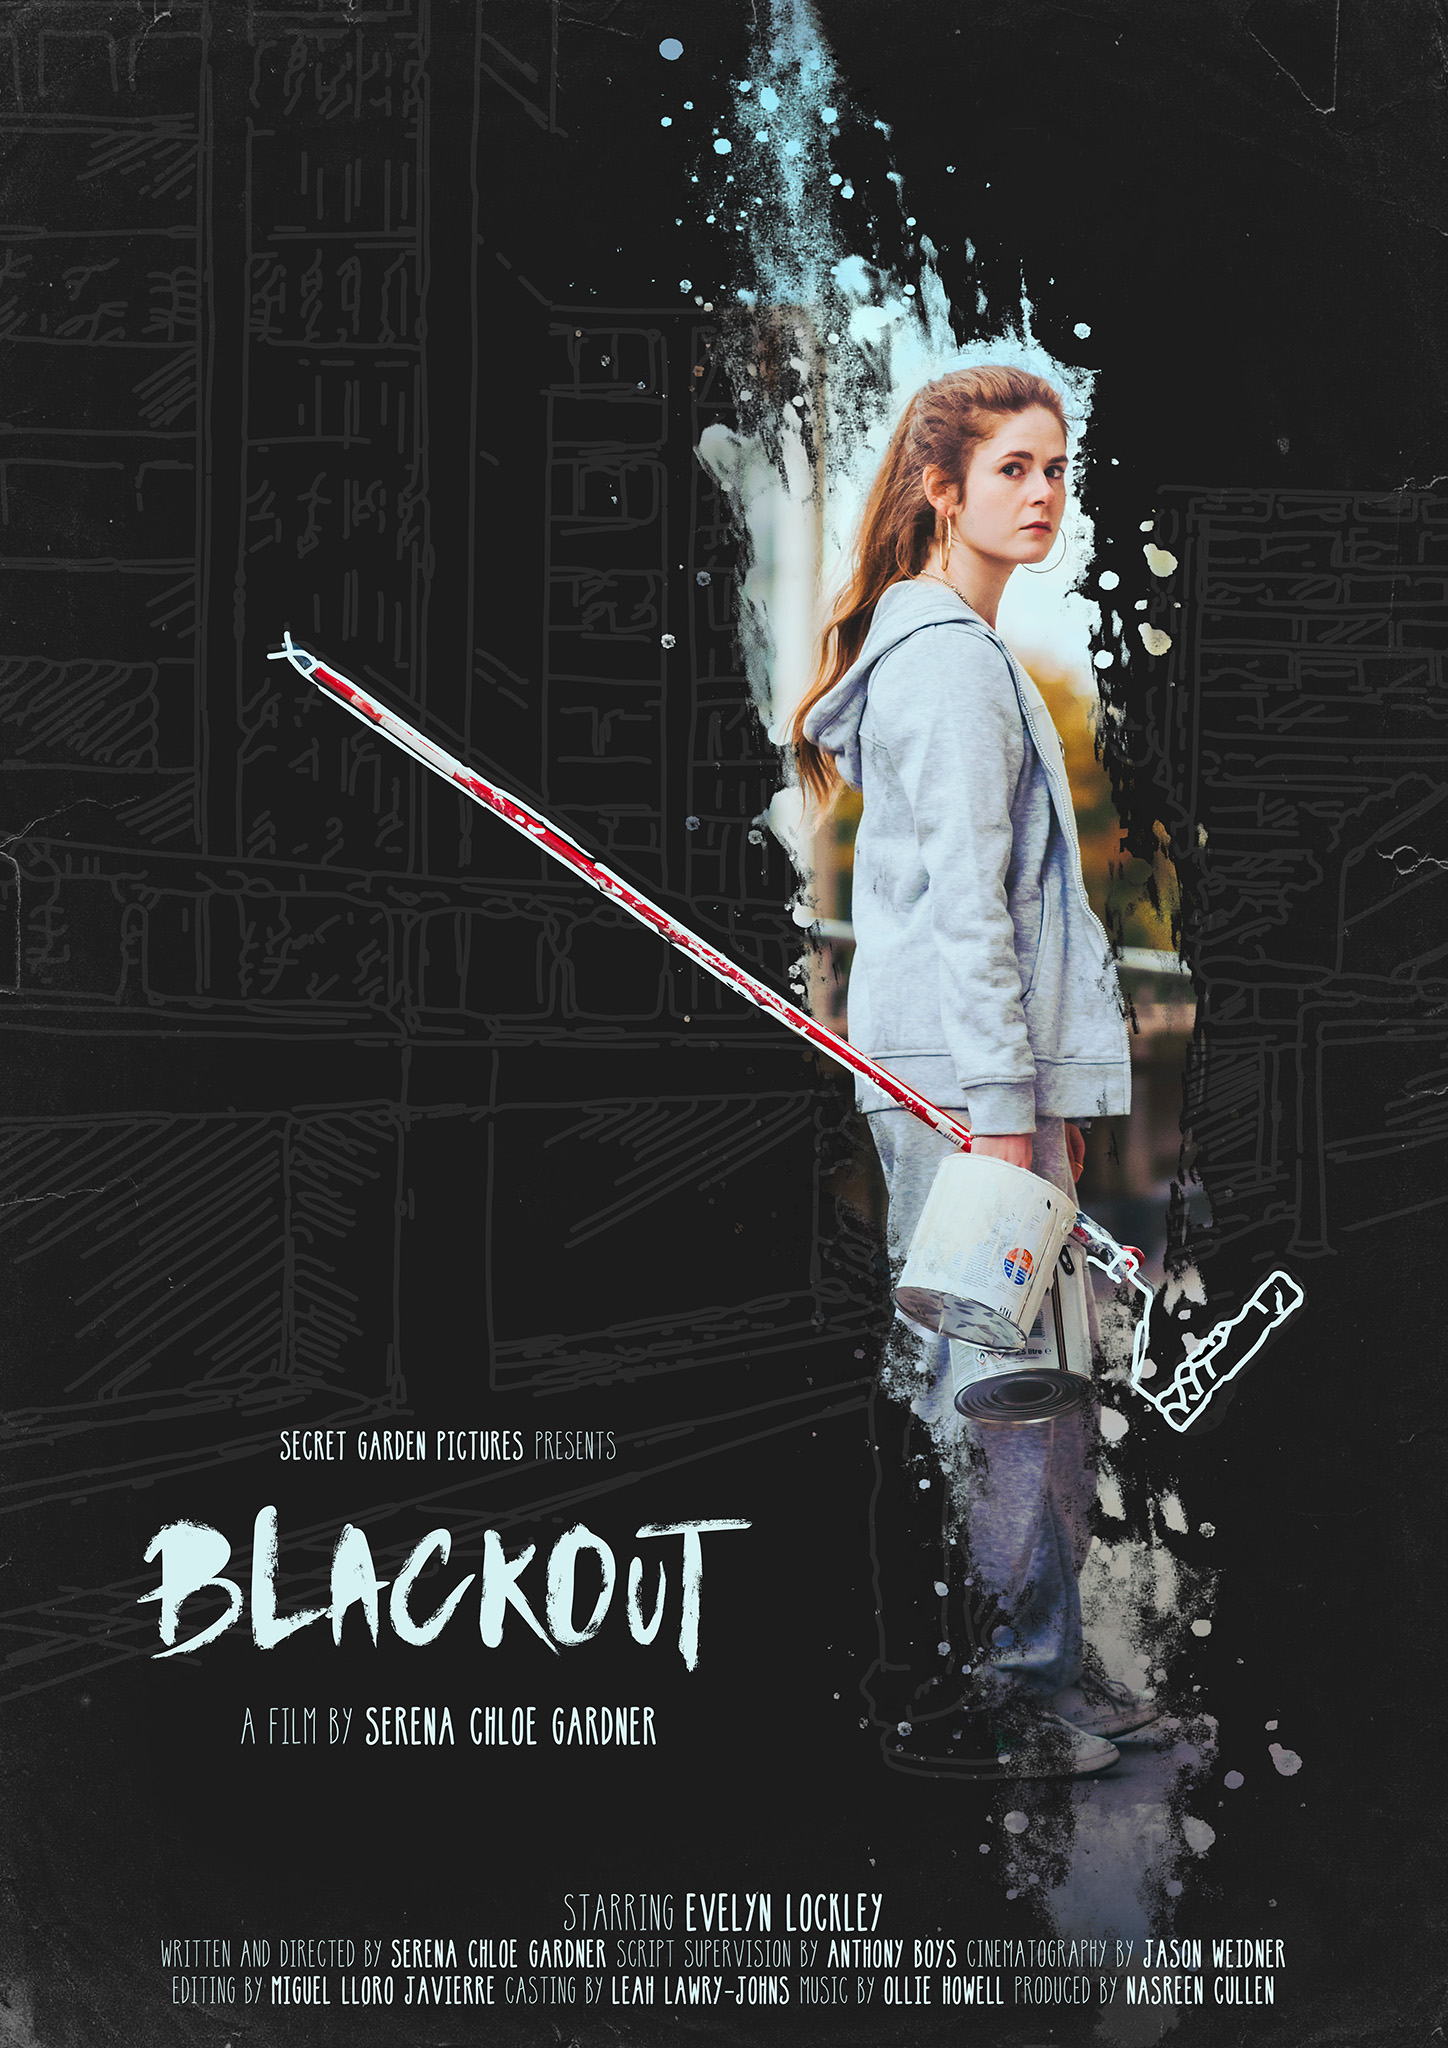 Short Film Review “Blackout” – One Film Fan